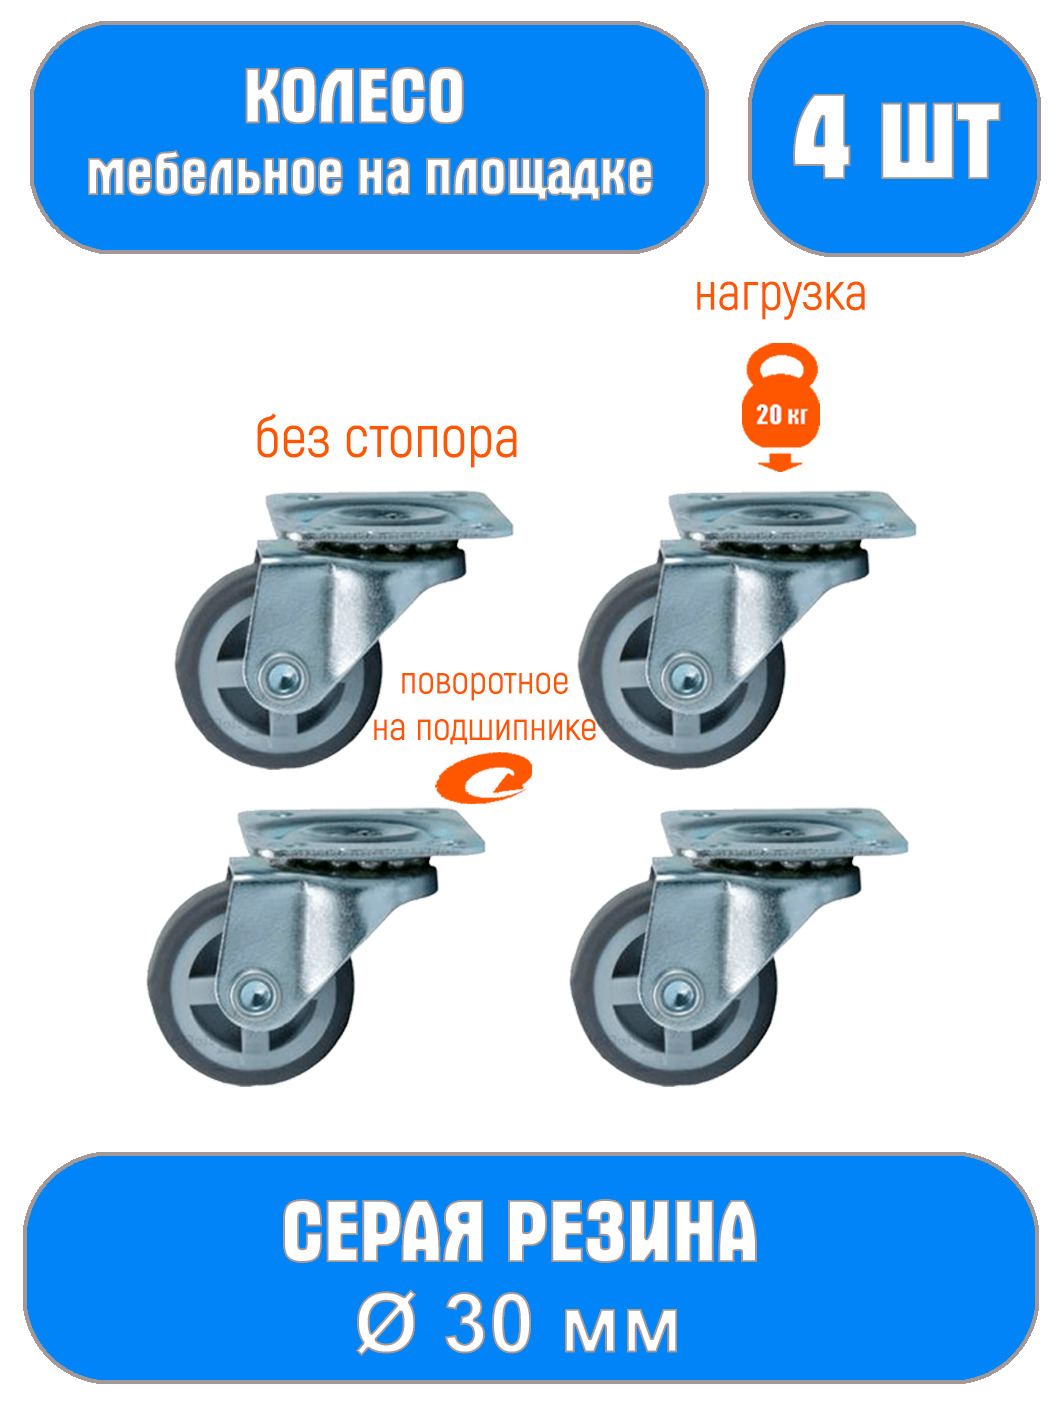 Мебельные колеса каталог товаров цены Ульяновск